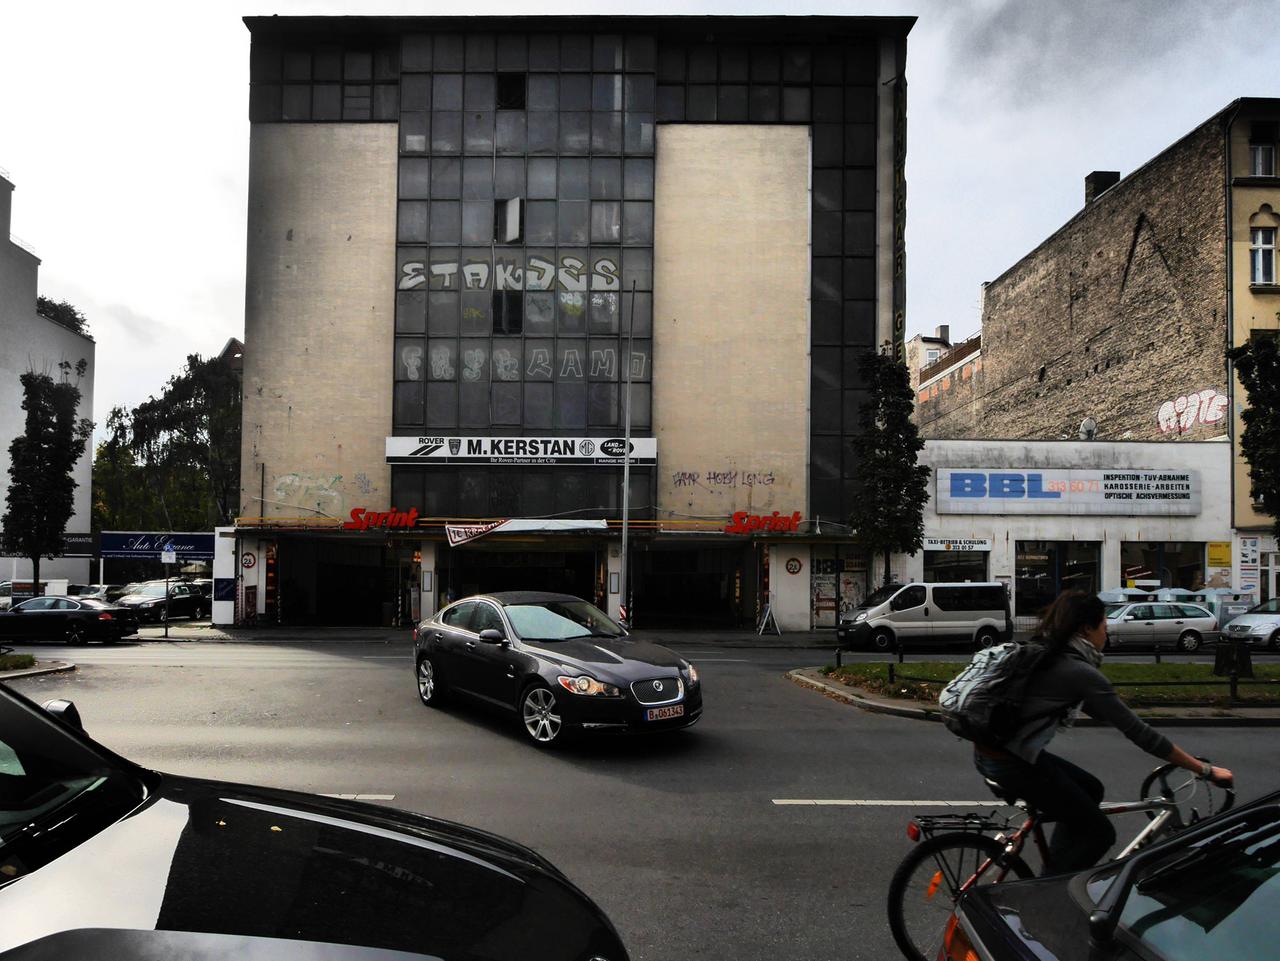 Ein Bild der Kant-Garage aus dem Jahr 2014. Der Putz des Gebäudes ist dunkelbesch, Graffiti ist auf dem Gemäuer. Auf dem Nachbargrundstück steht ein eingeschossiger Bau, vom nächsten Haus ist die Brandmauer zu sehen.